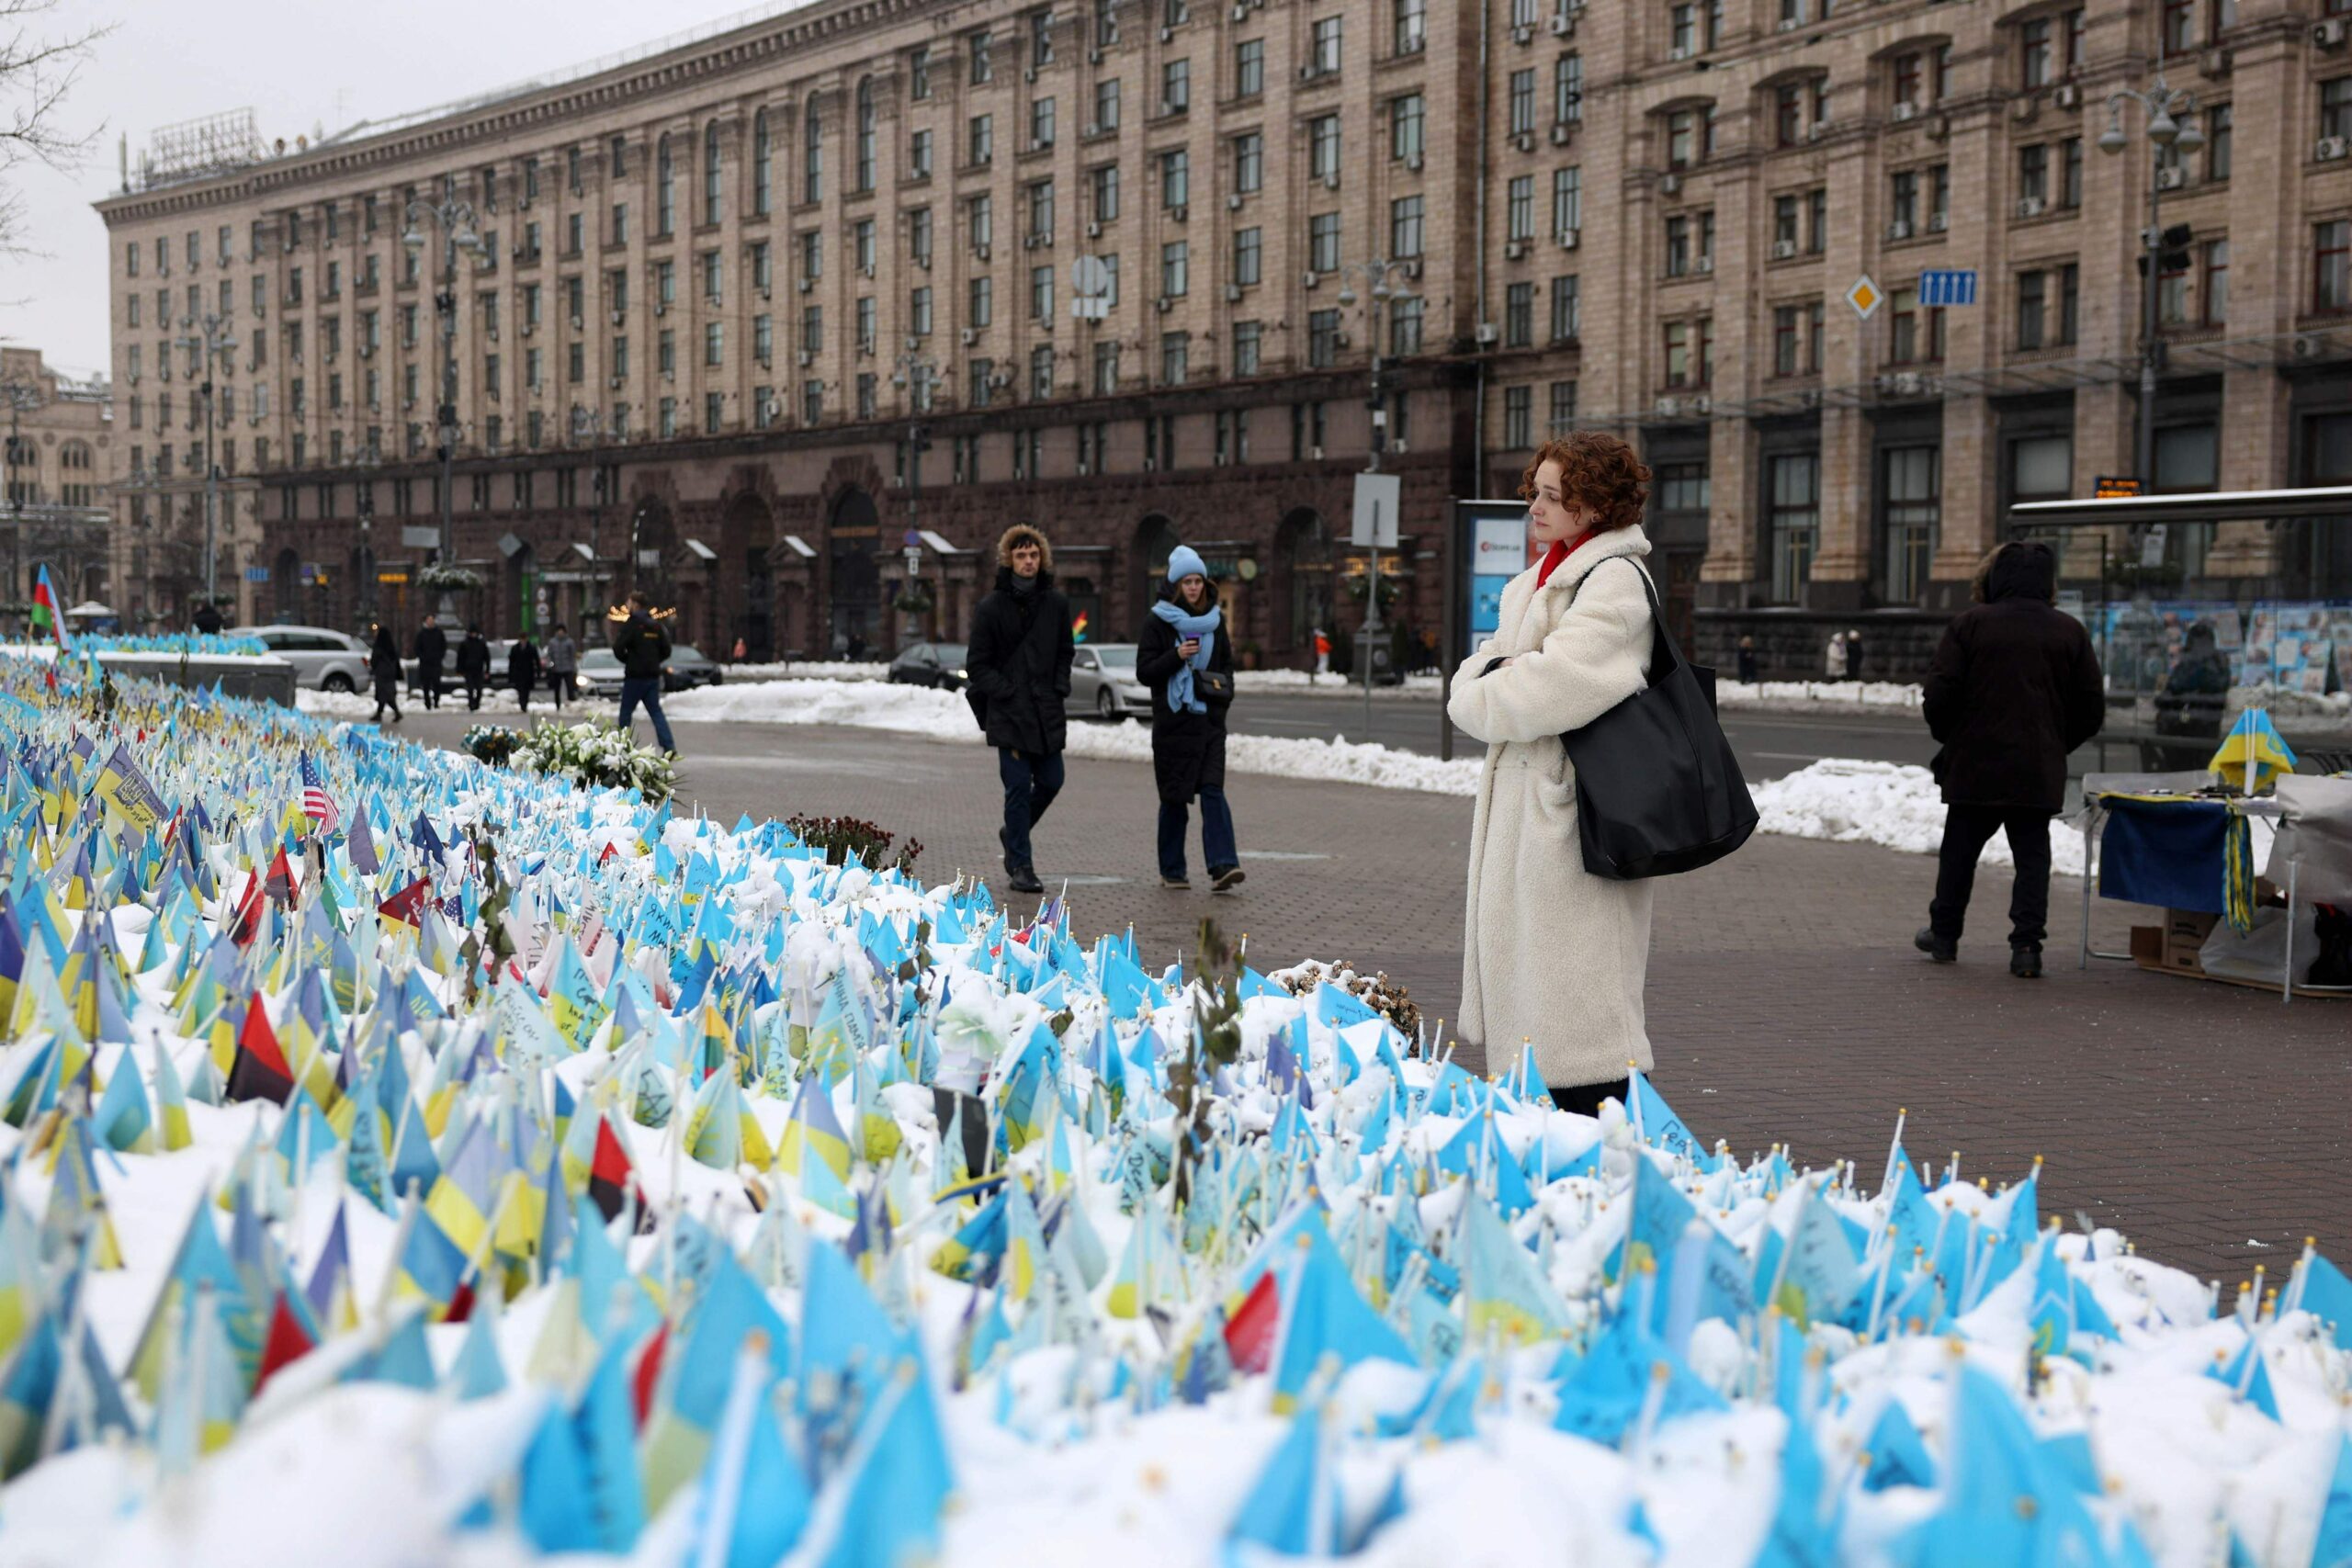 ”Ukraina ei koskaan luovuta – siksi se ansaitsee apumme” | Verkkouutiset